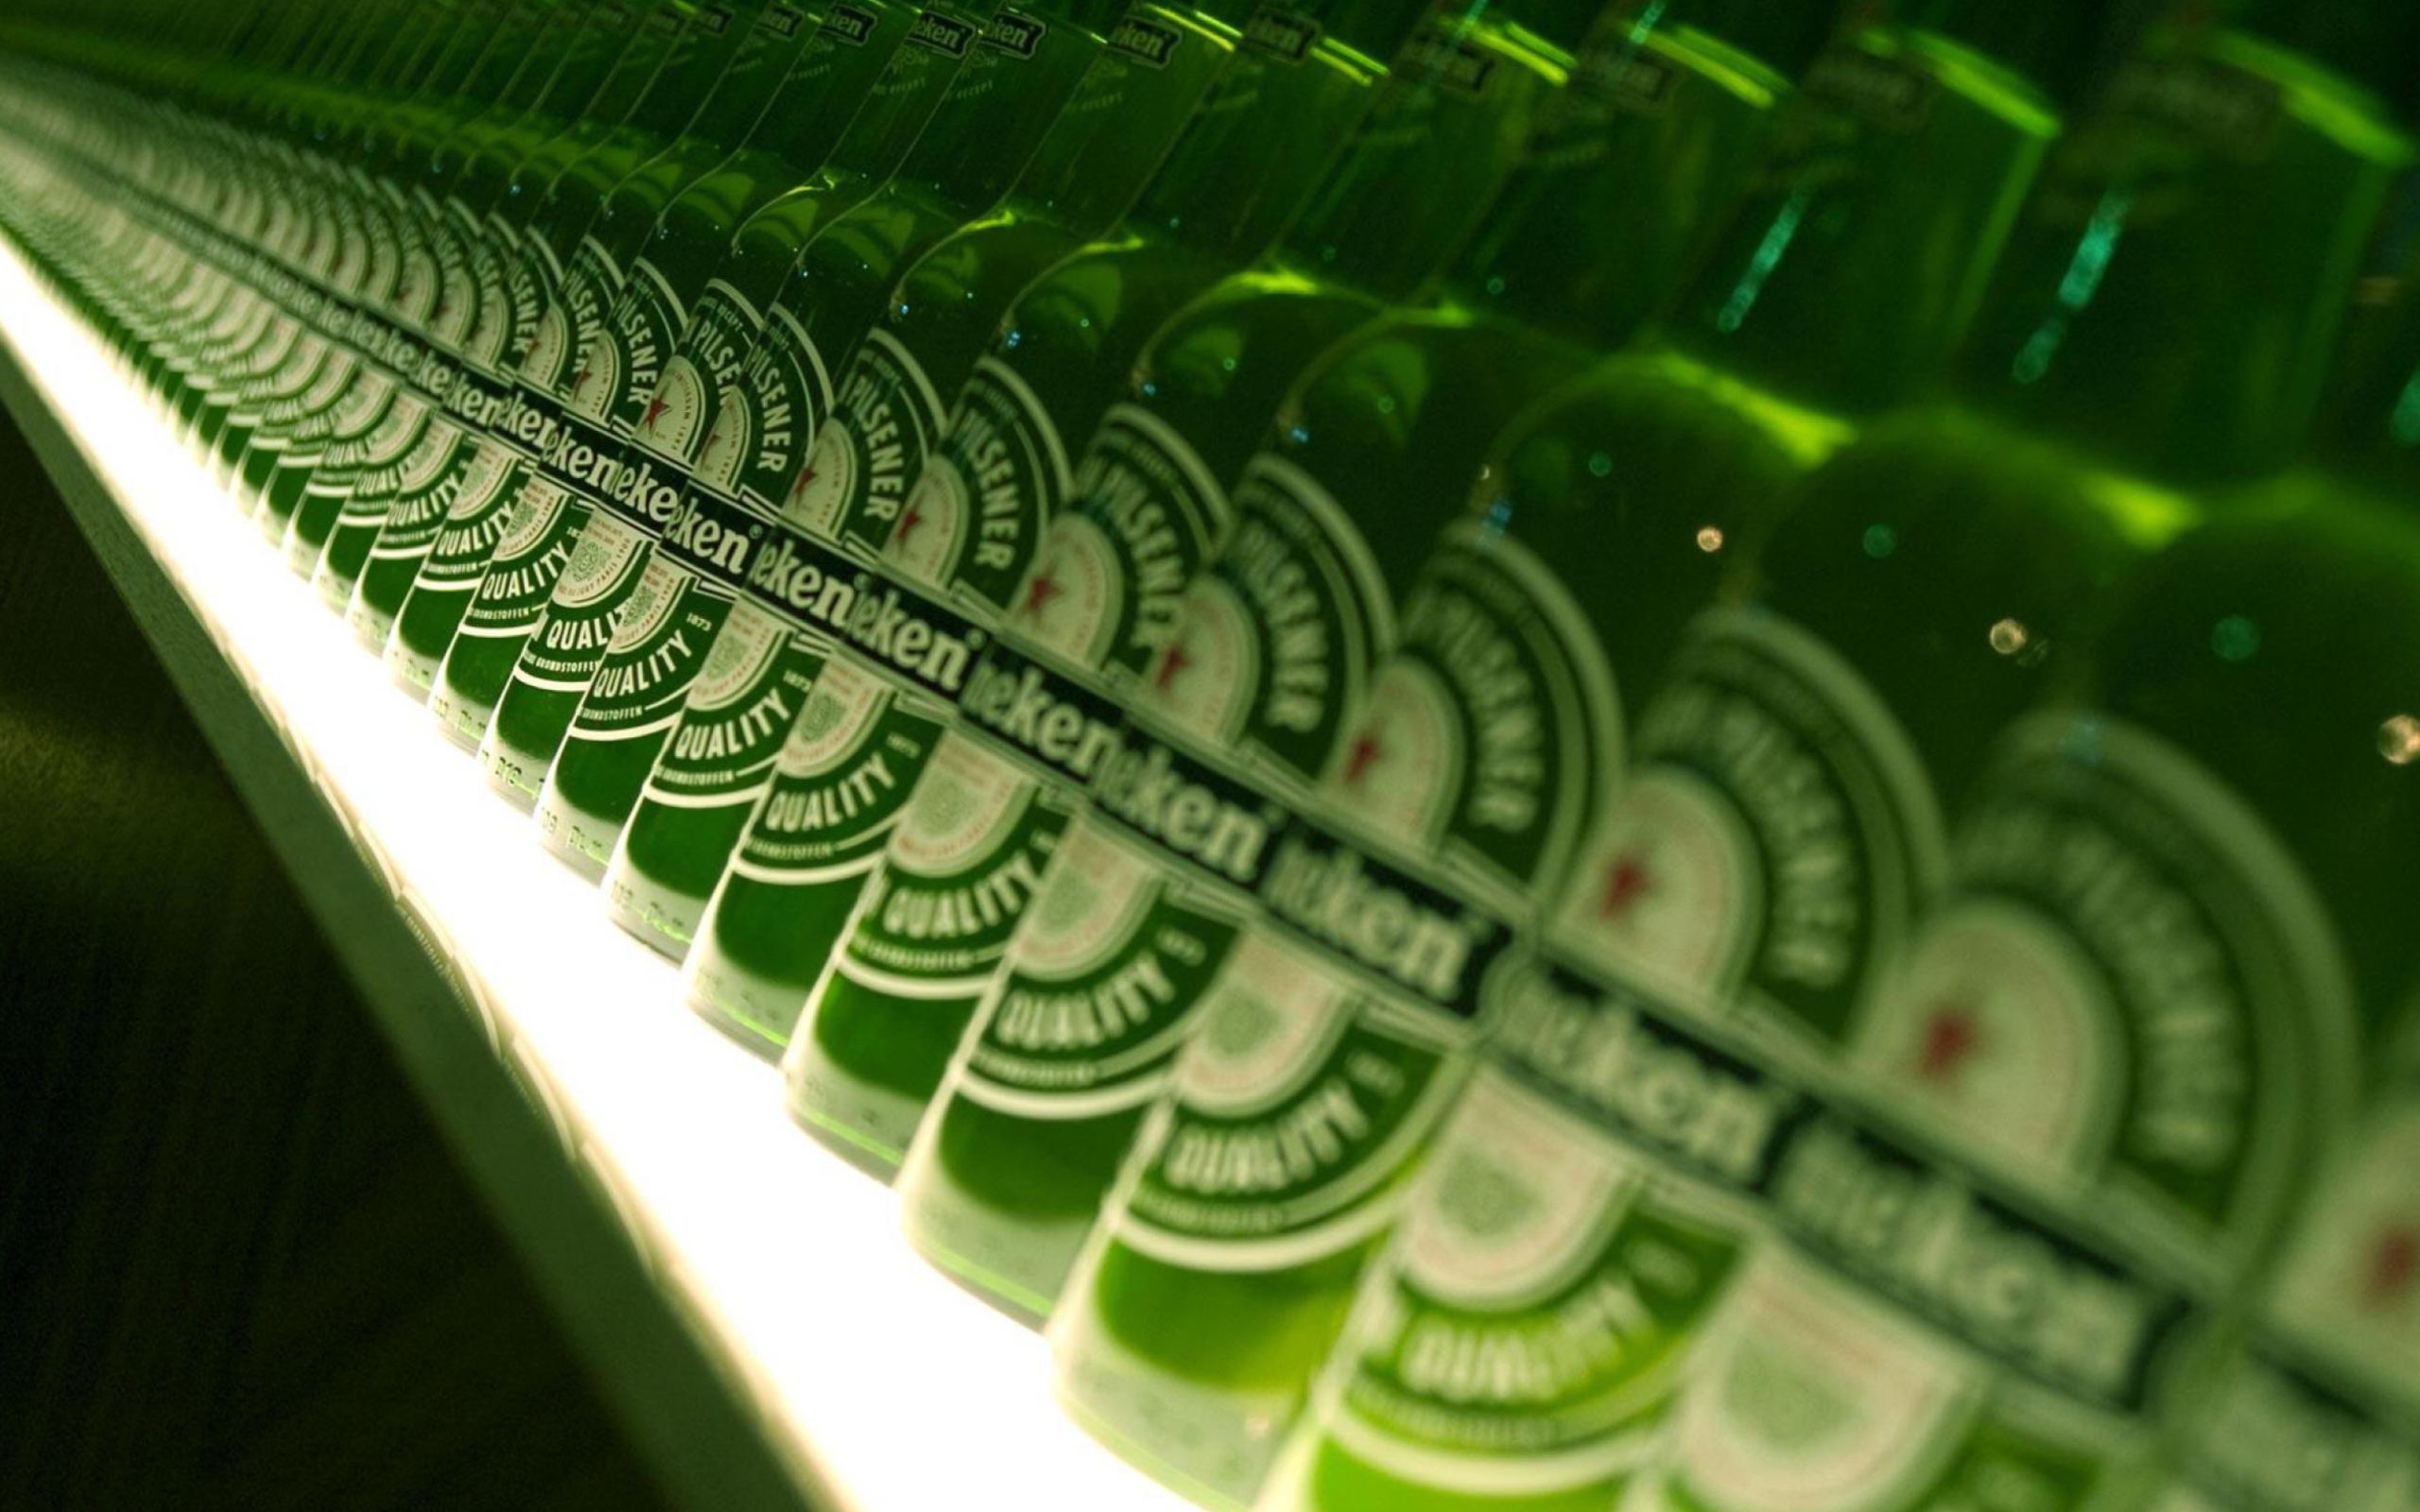 Sfondi Heineken Beer 2560x1600